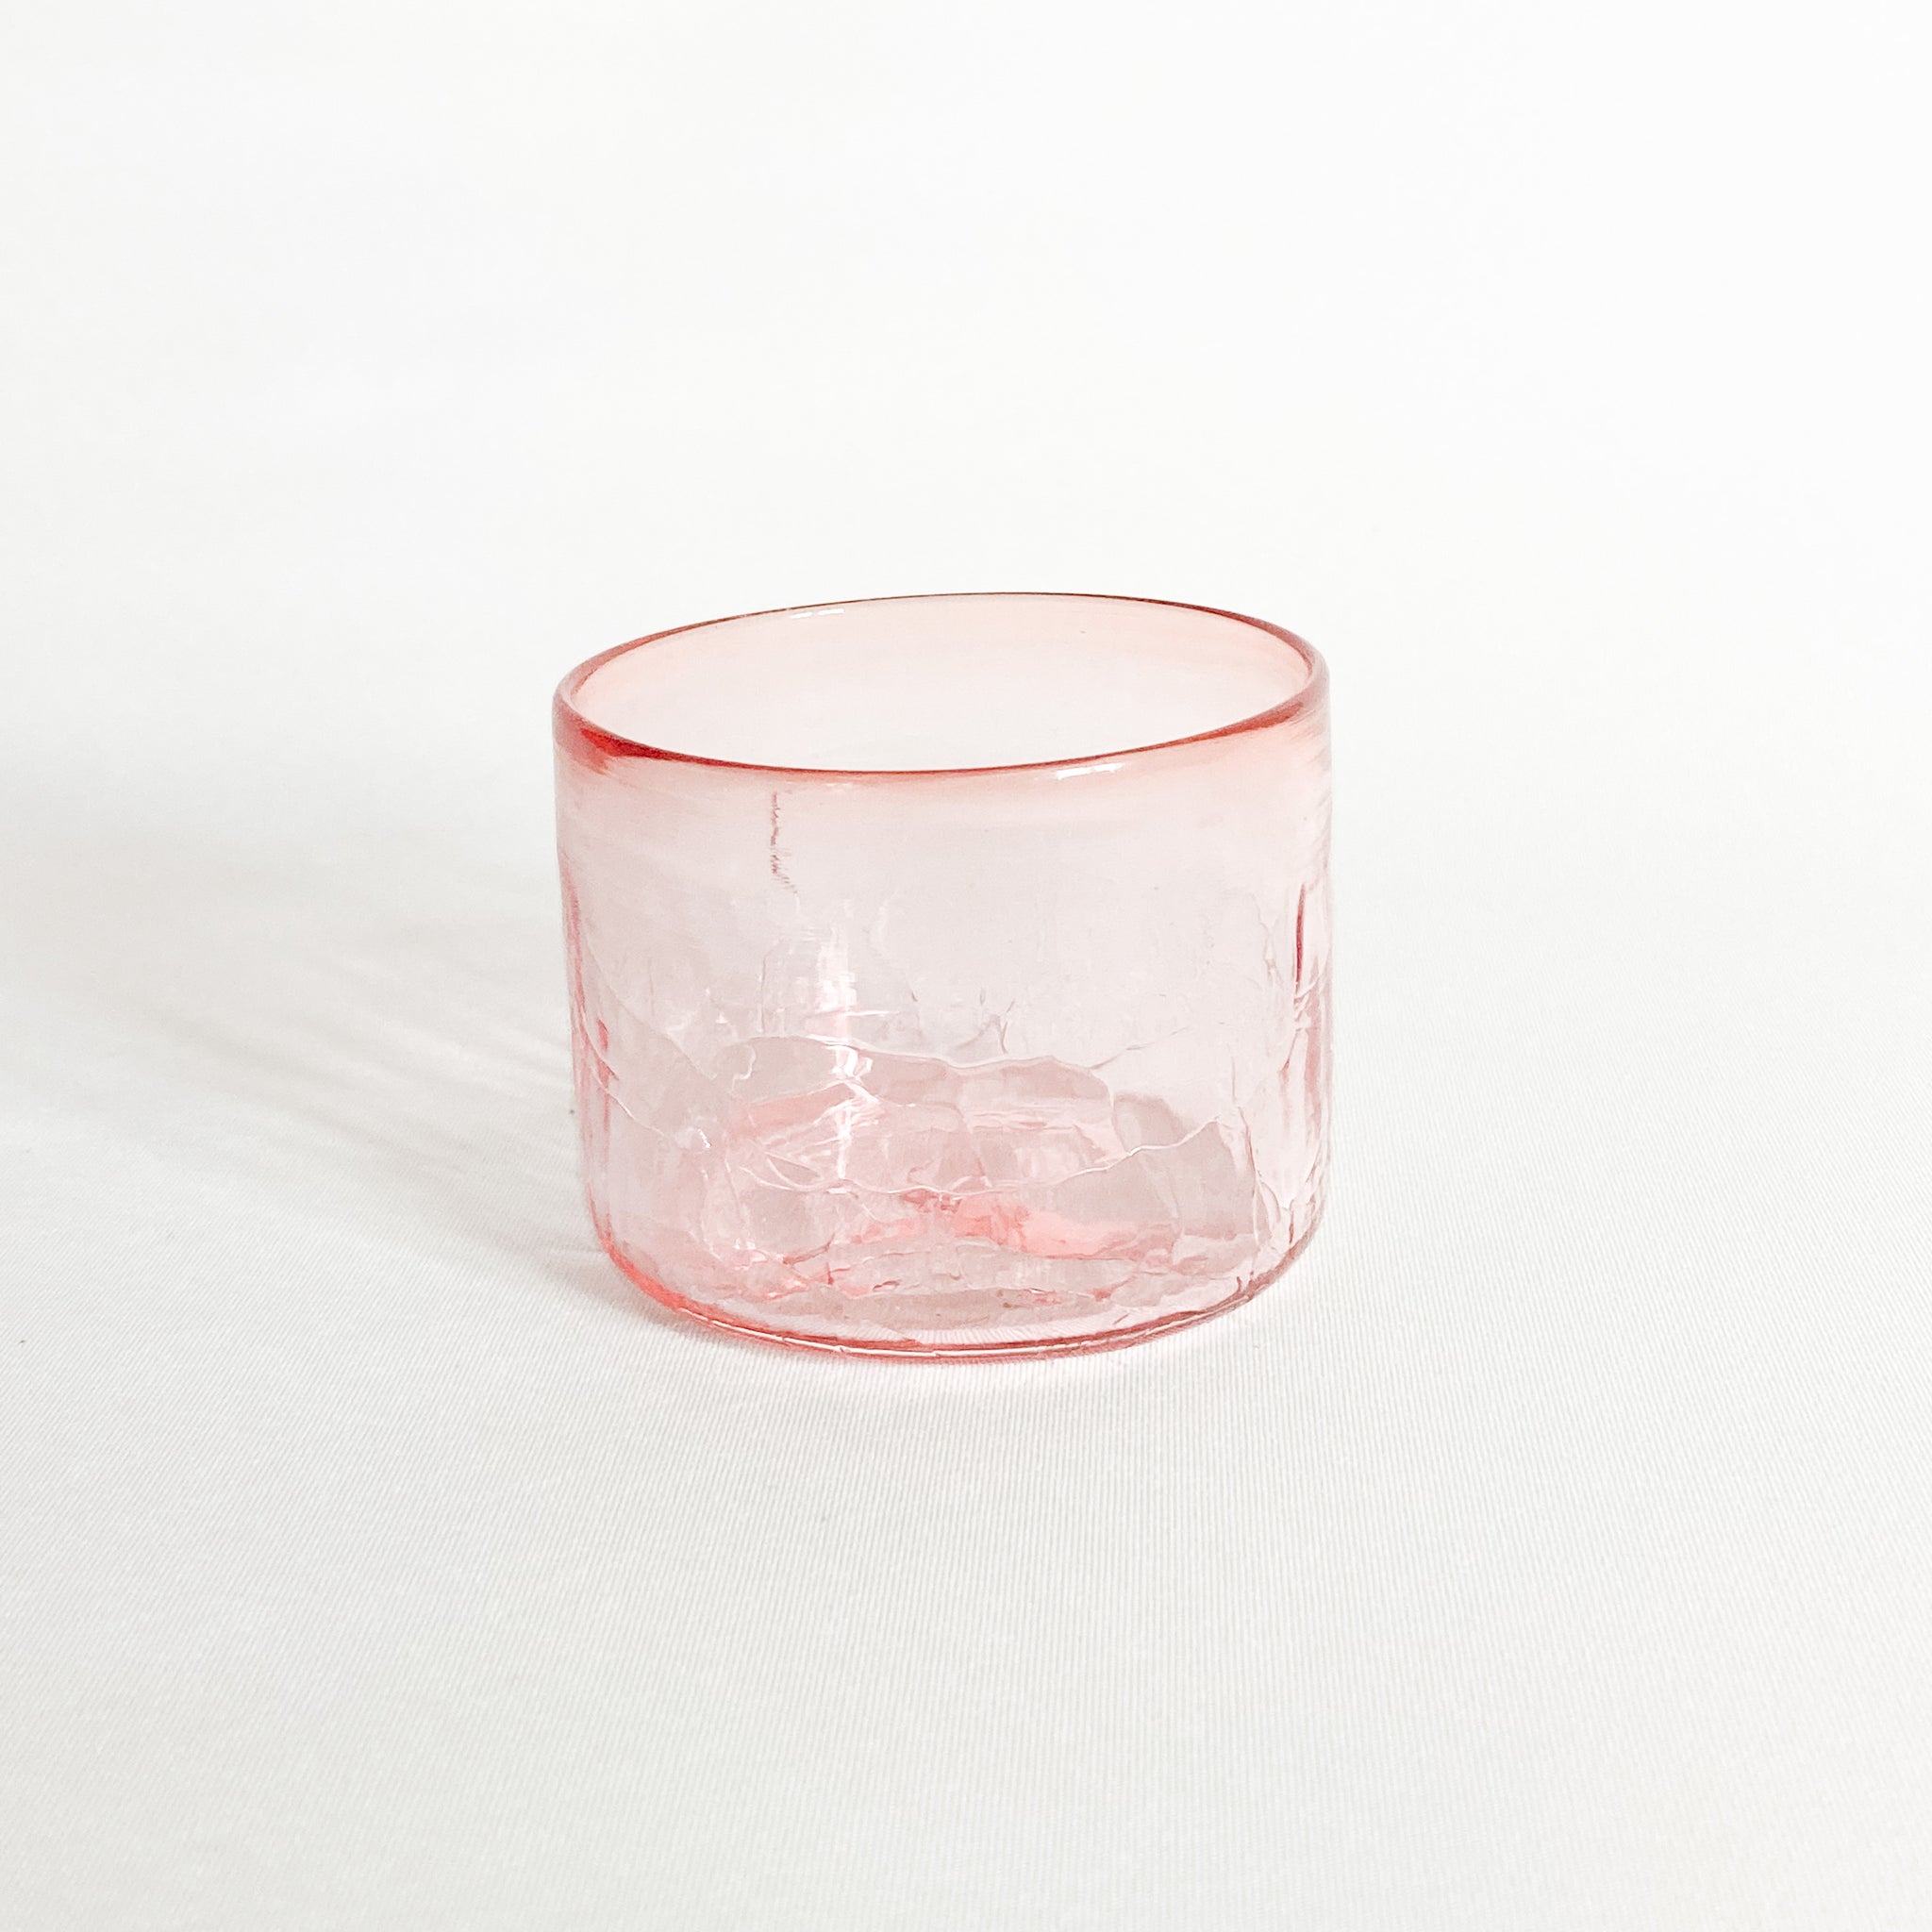 Crackle, short BLÆS // Reffen Glass Studio